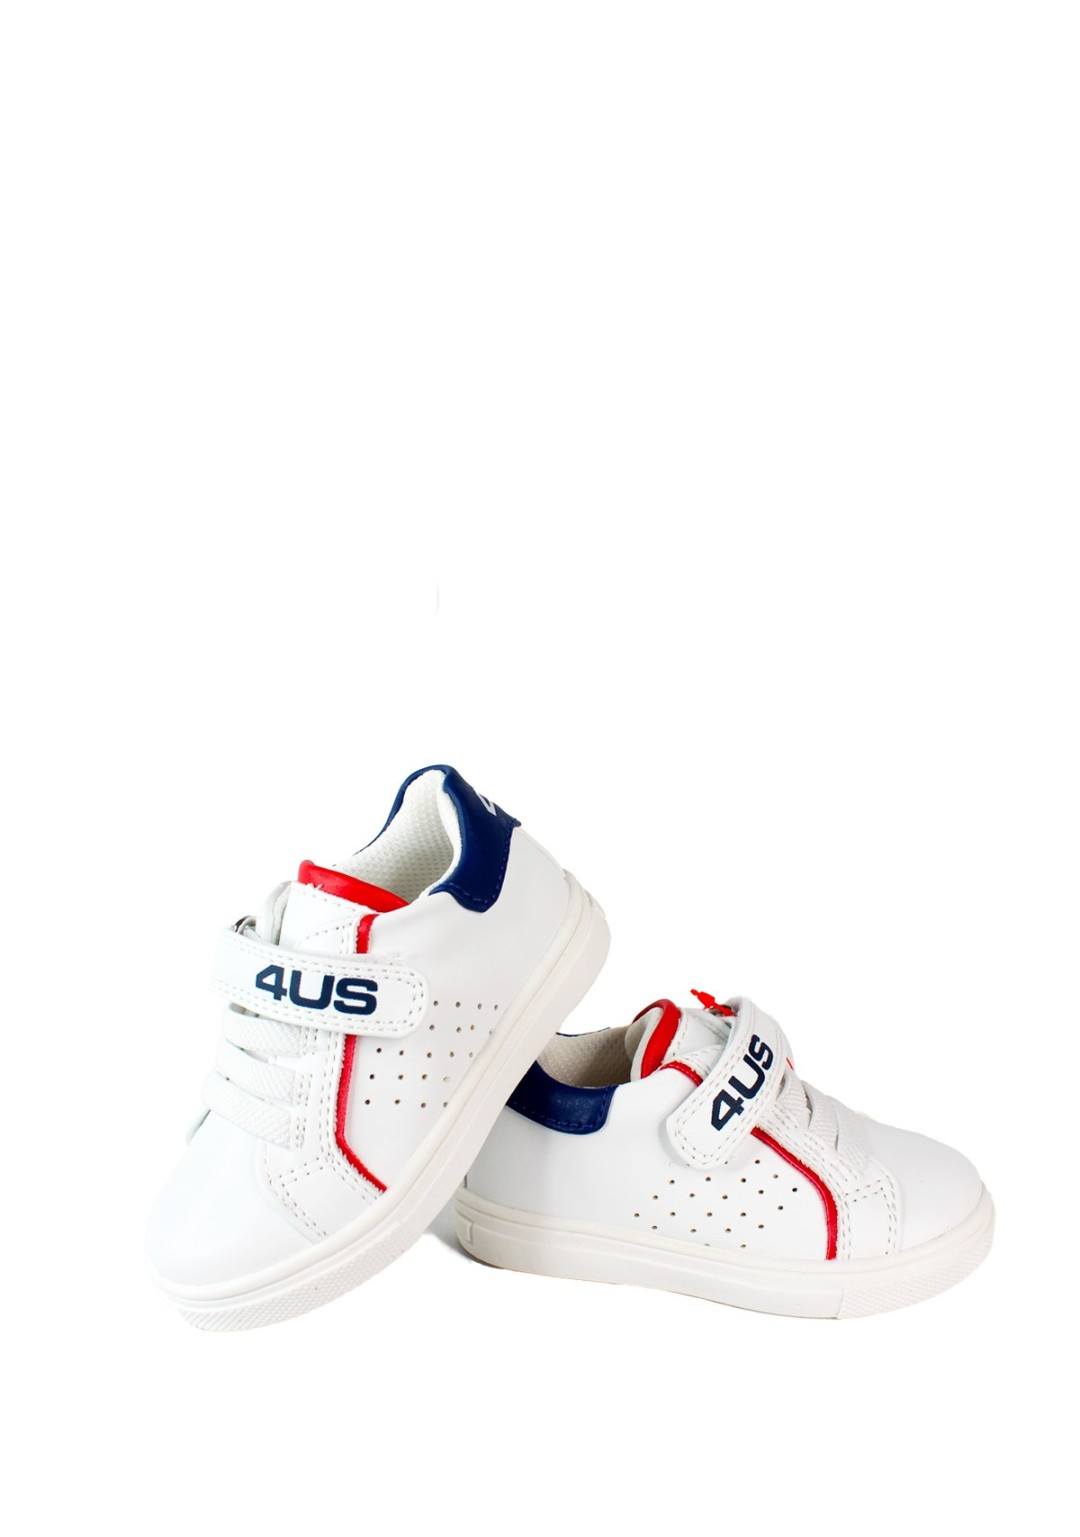 4US - Sneaker Strappo - Bambini e ragazzi - 42470